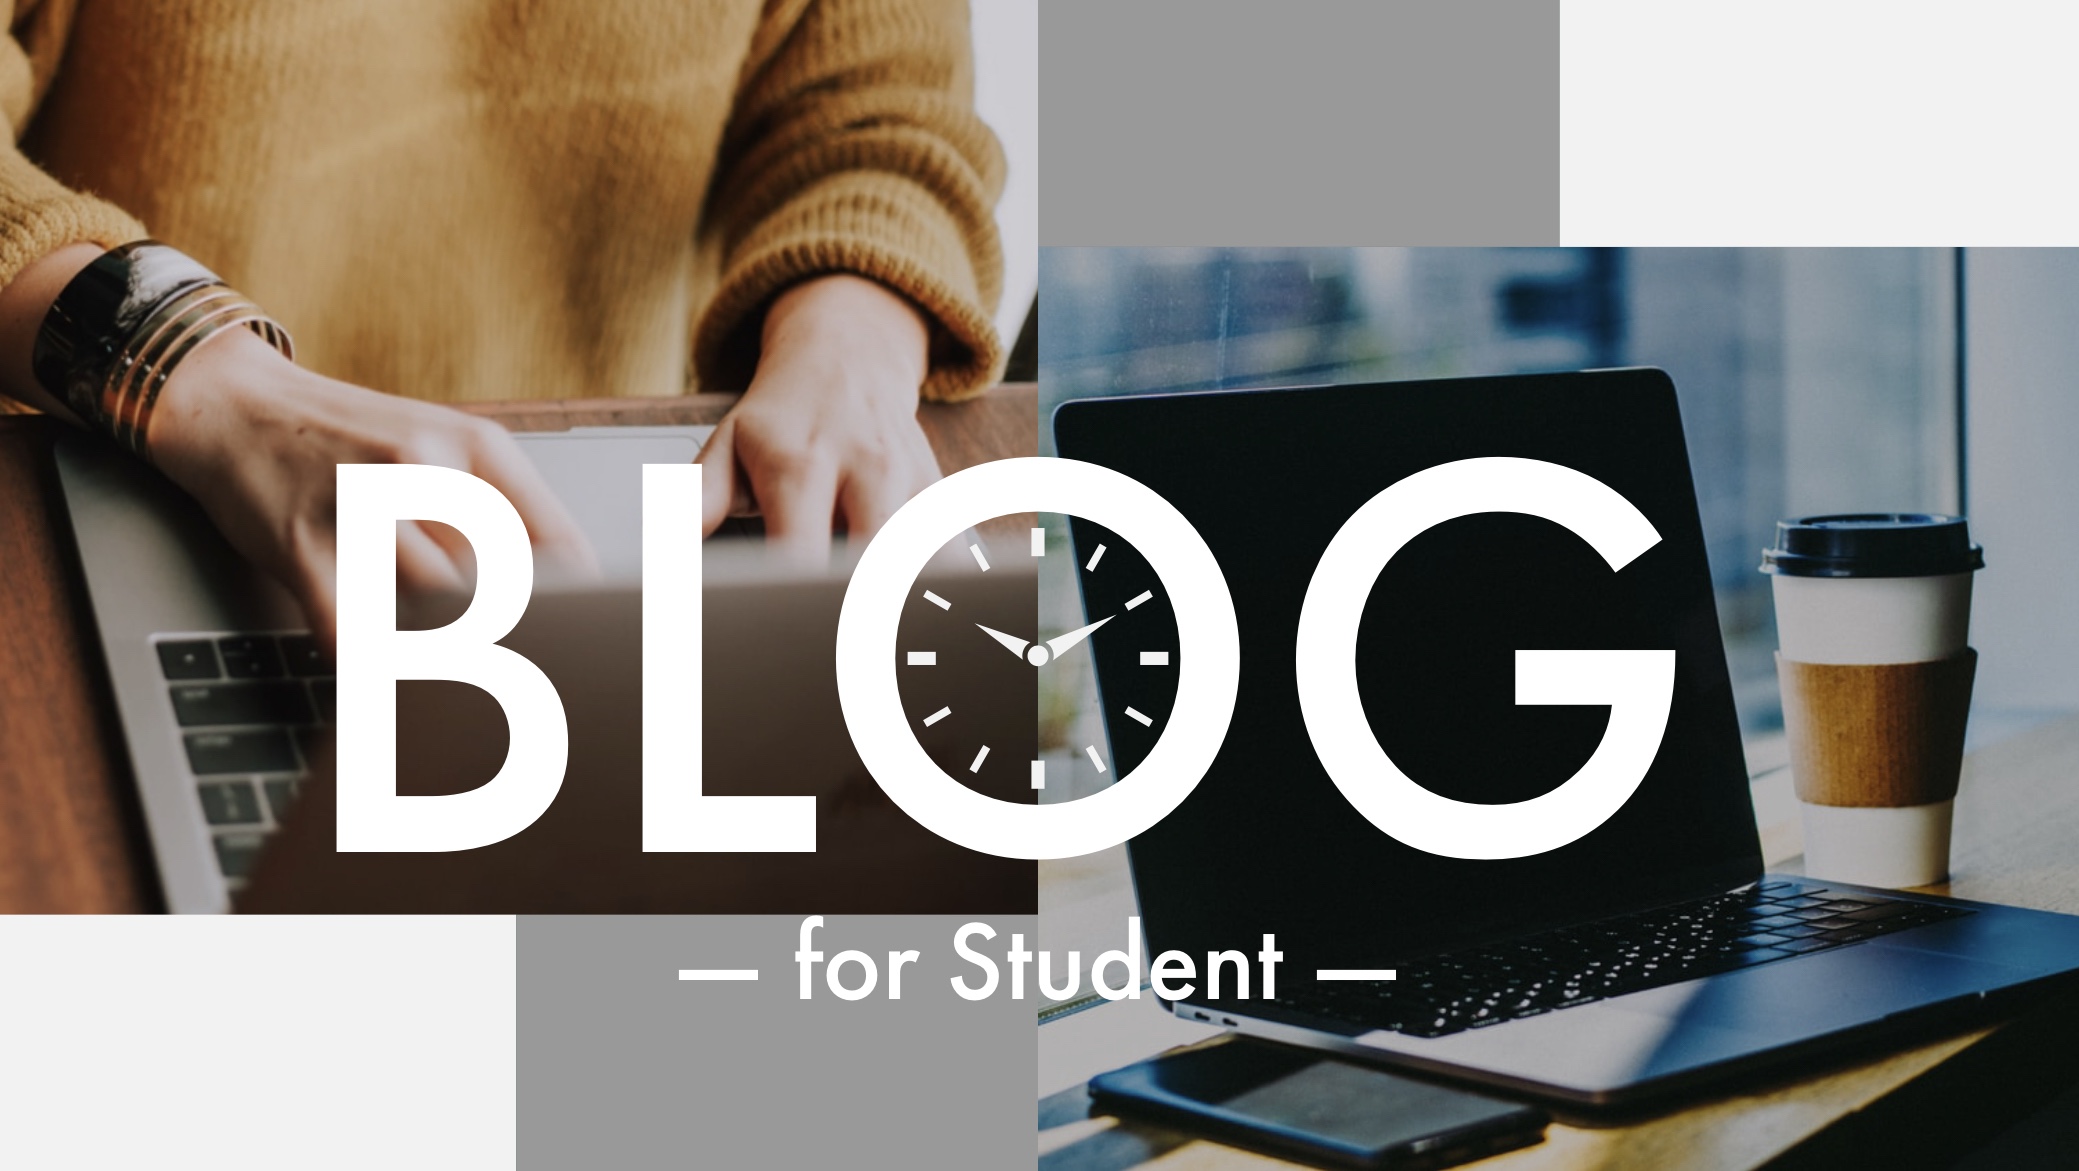 【本質がわかる】大学生にブログが絶対おすすめな理由【3本の柱で解説】